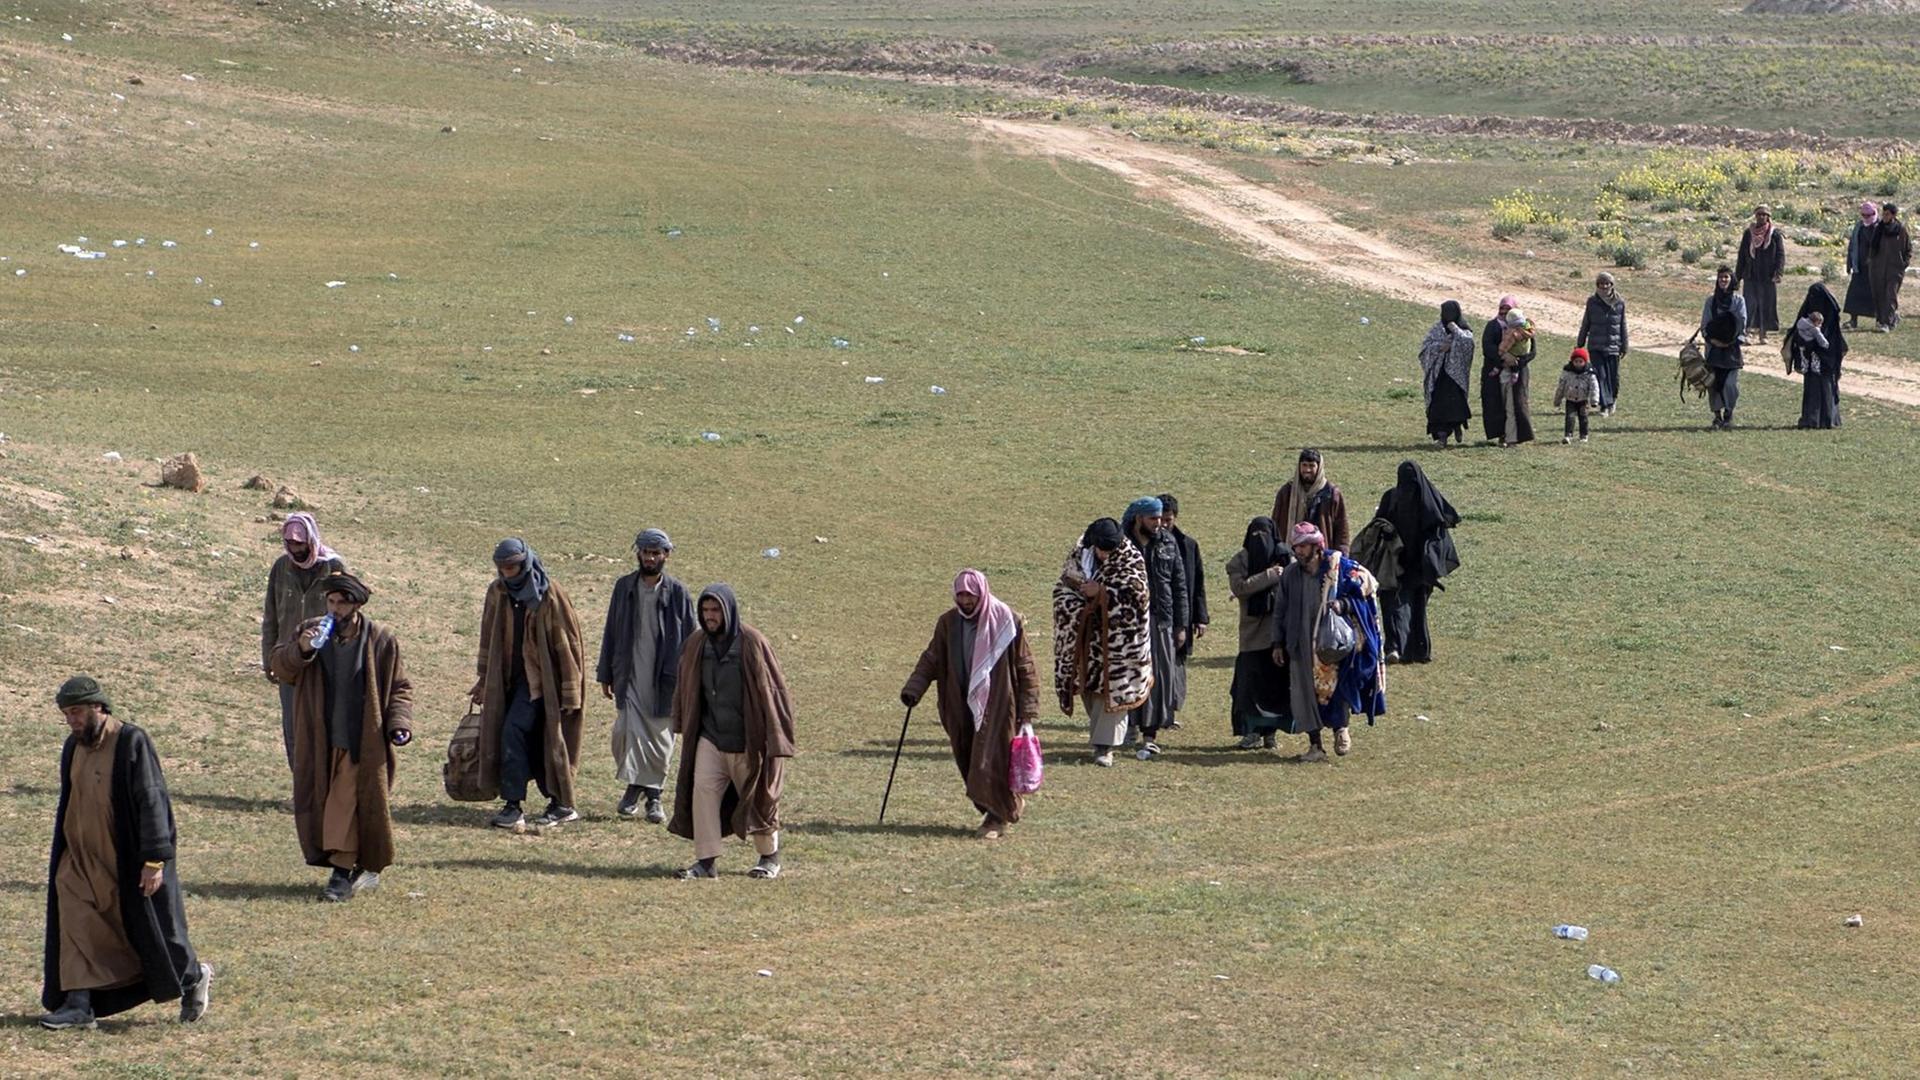 Mutmaßliche IS-Kämpfer verlassen mit ihren Angehörigen den umkämpften Ort Baghouz